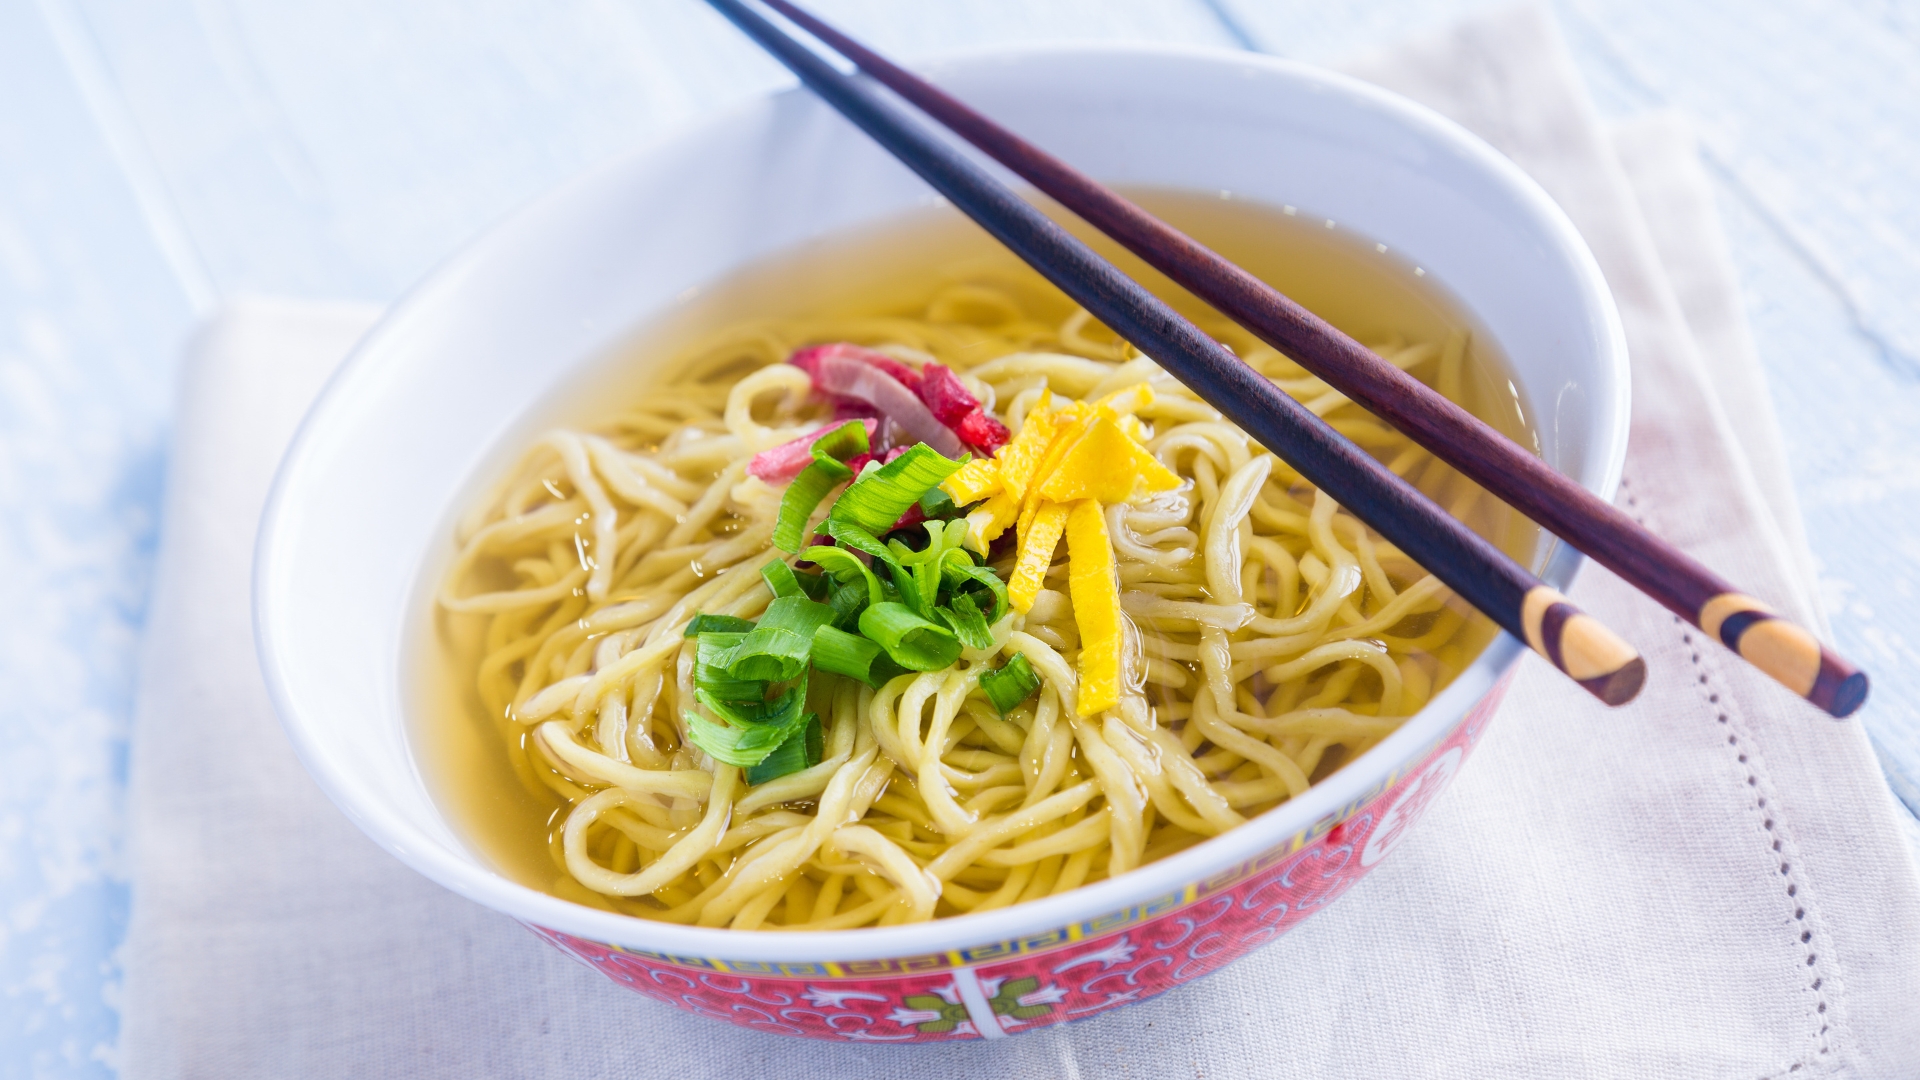 Saimin - Noodle Soup Dish